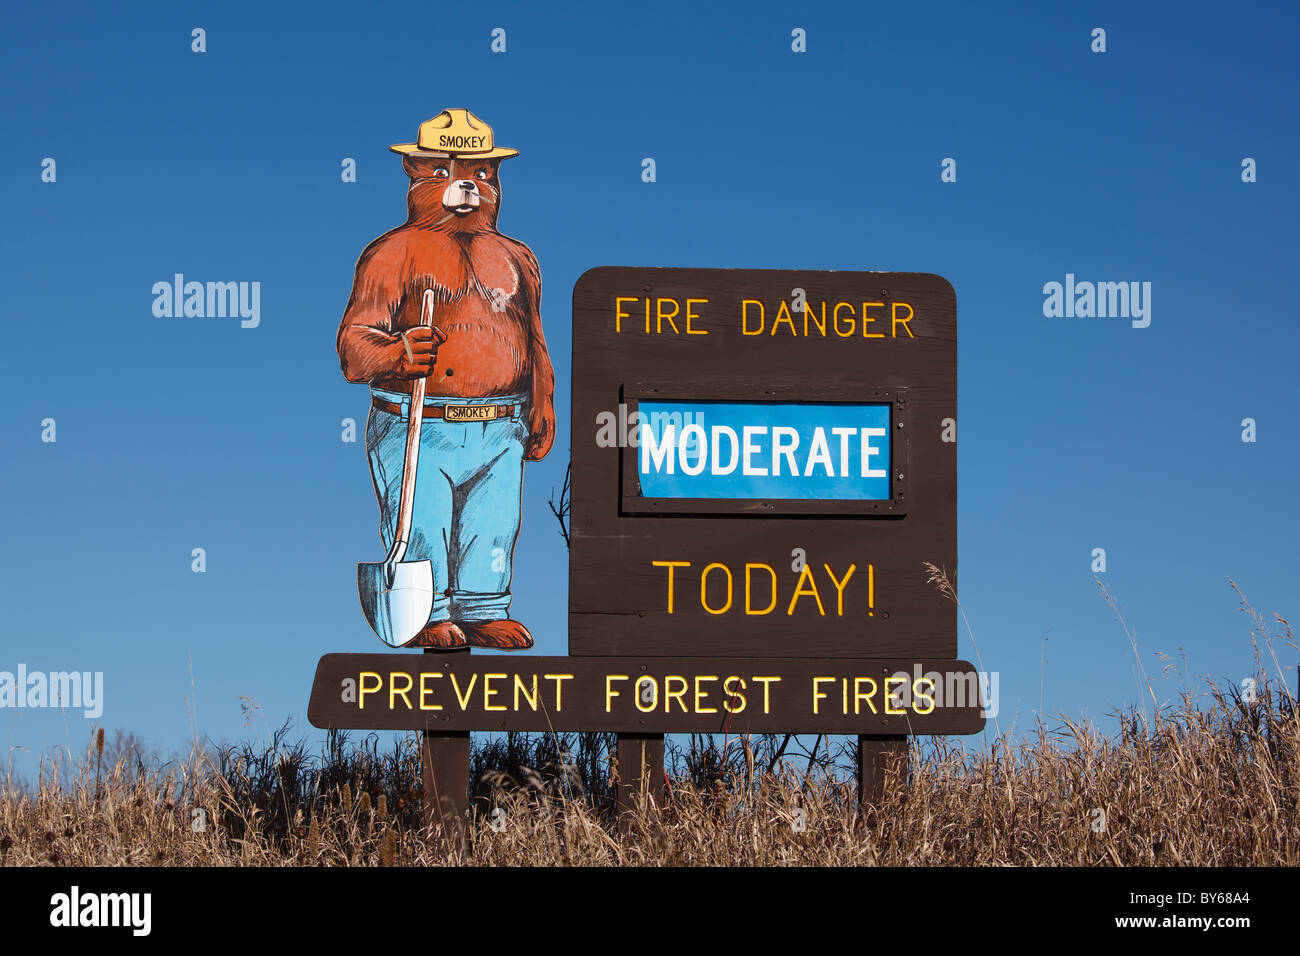 Ein Smokey der Bär Feuer Gefahr Schild mit "moderat" Risiko - Norden von Minnesota, USA. Stockfoto